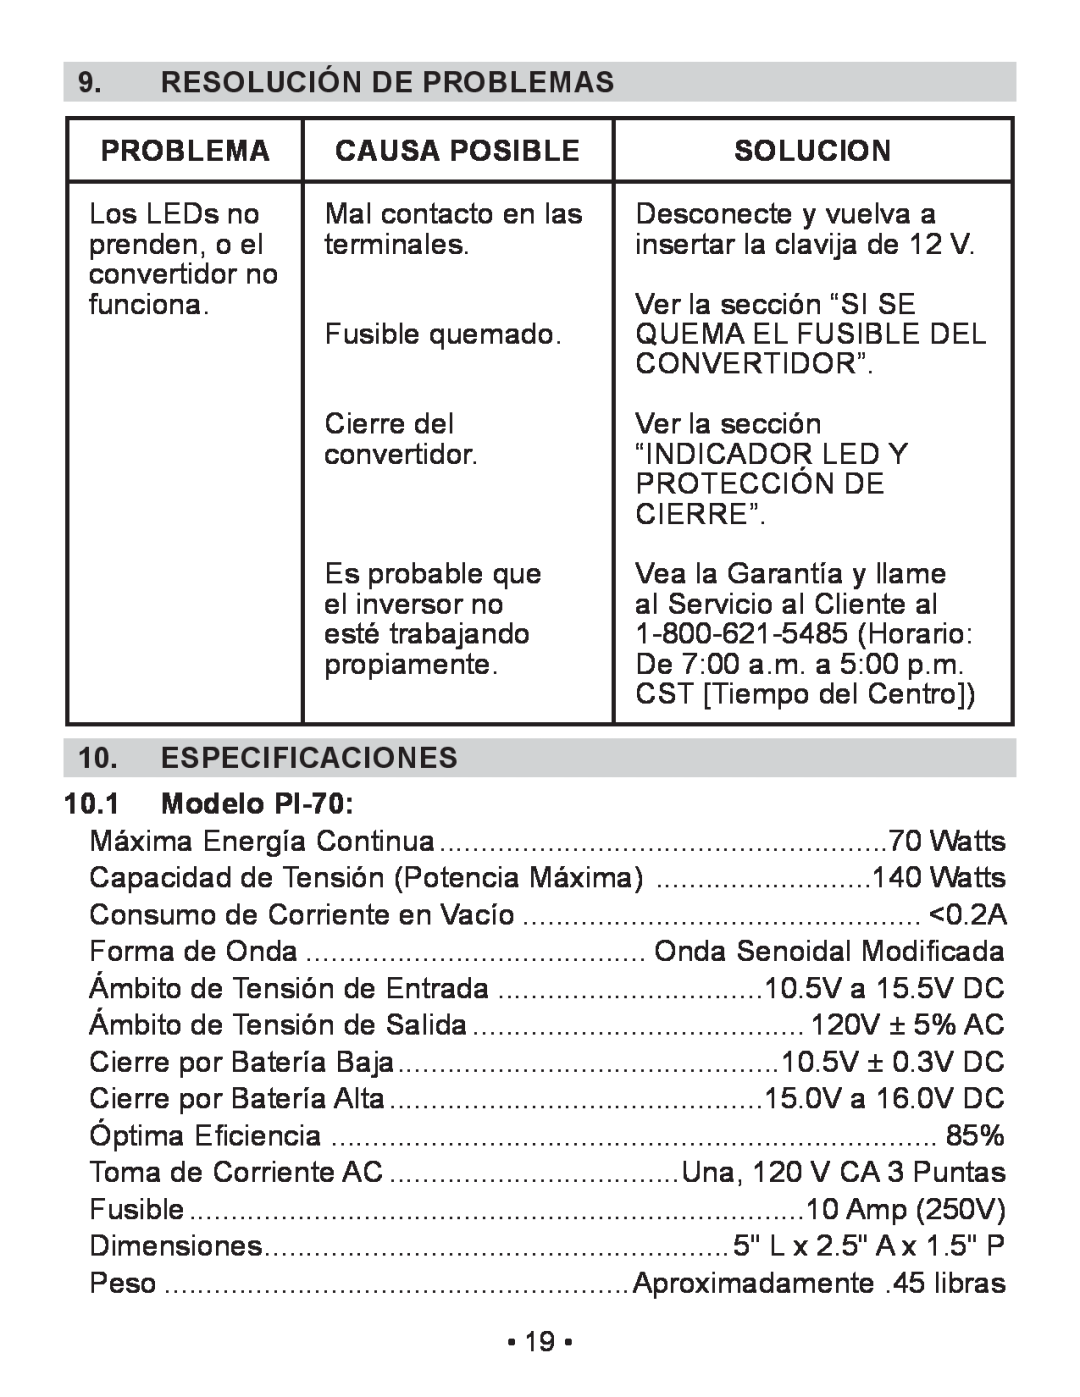 Schumacher owner manual Resolución De Problemas, Causa Posible, Solucion, Especificaciones, Modelo PI-70, 10.1 